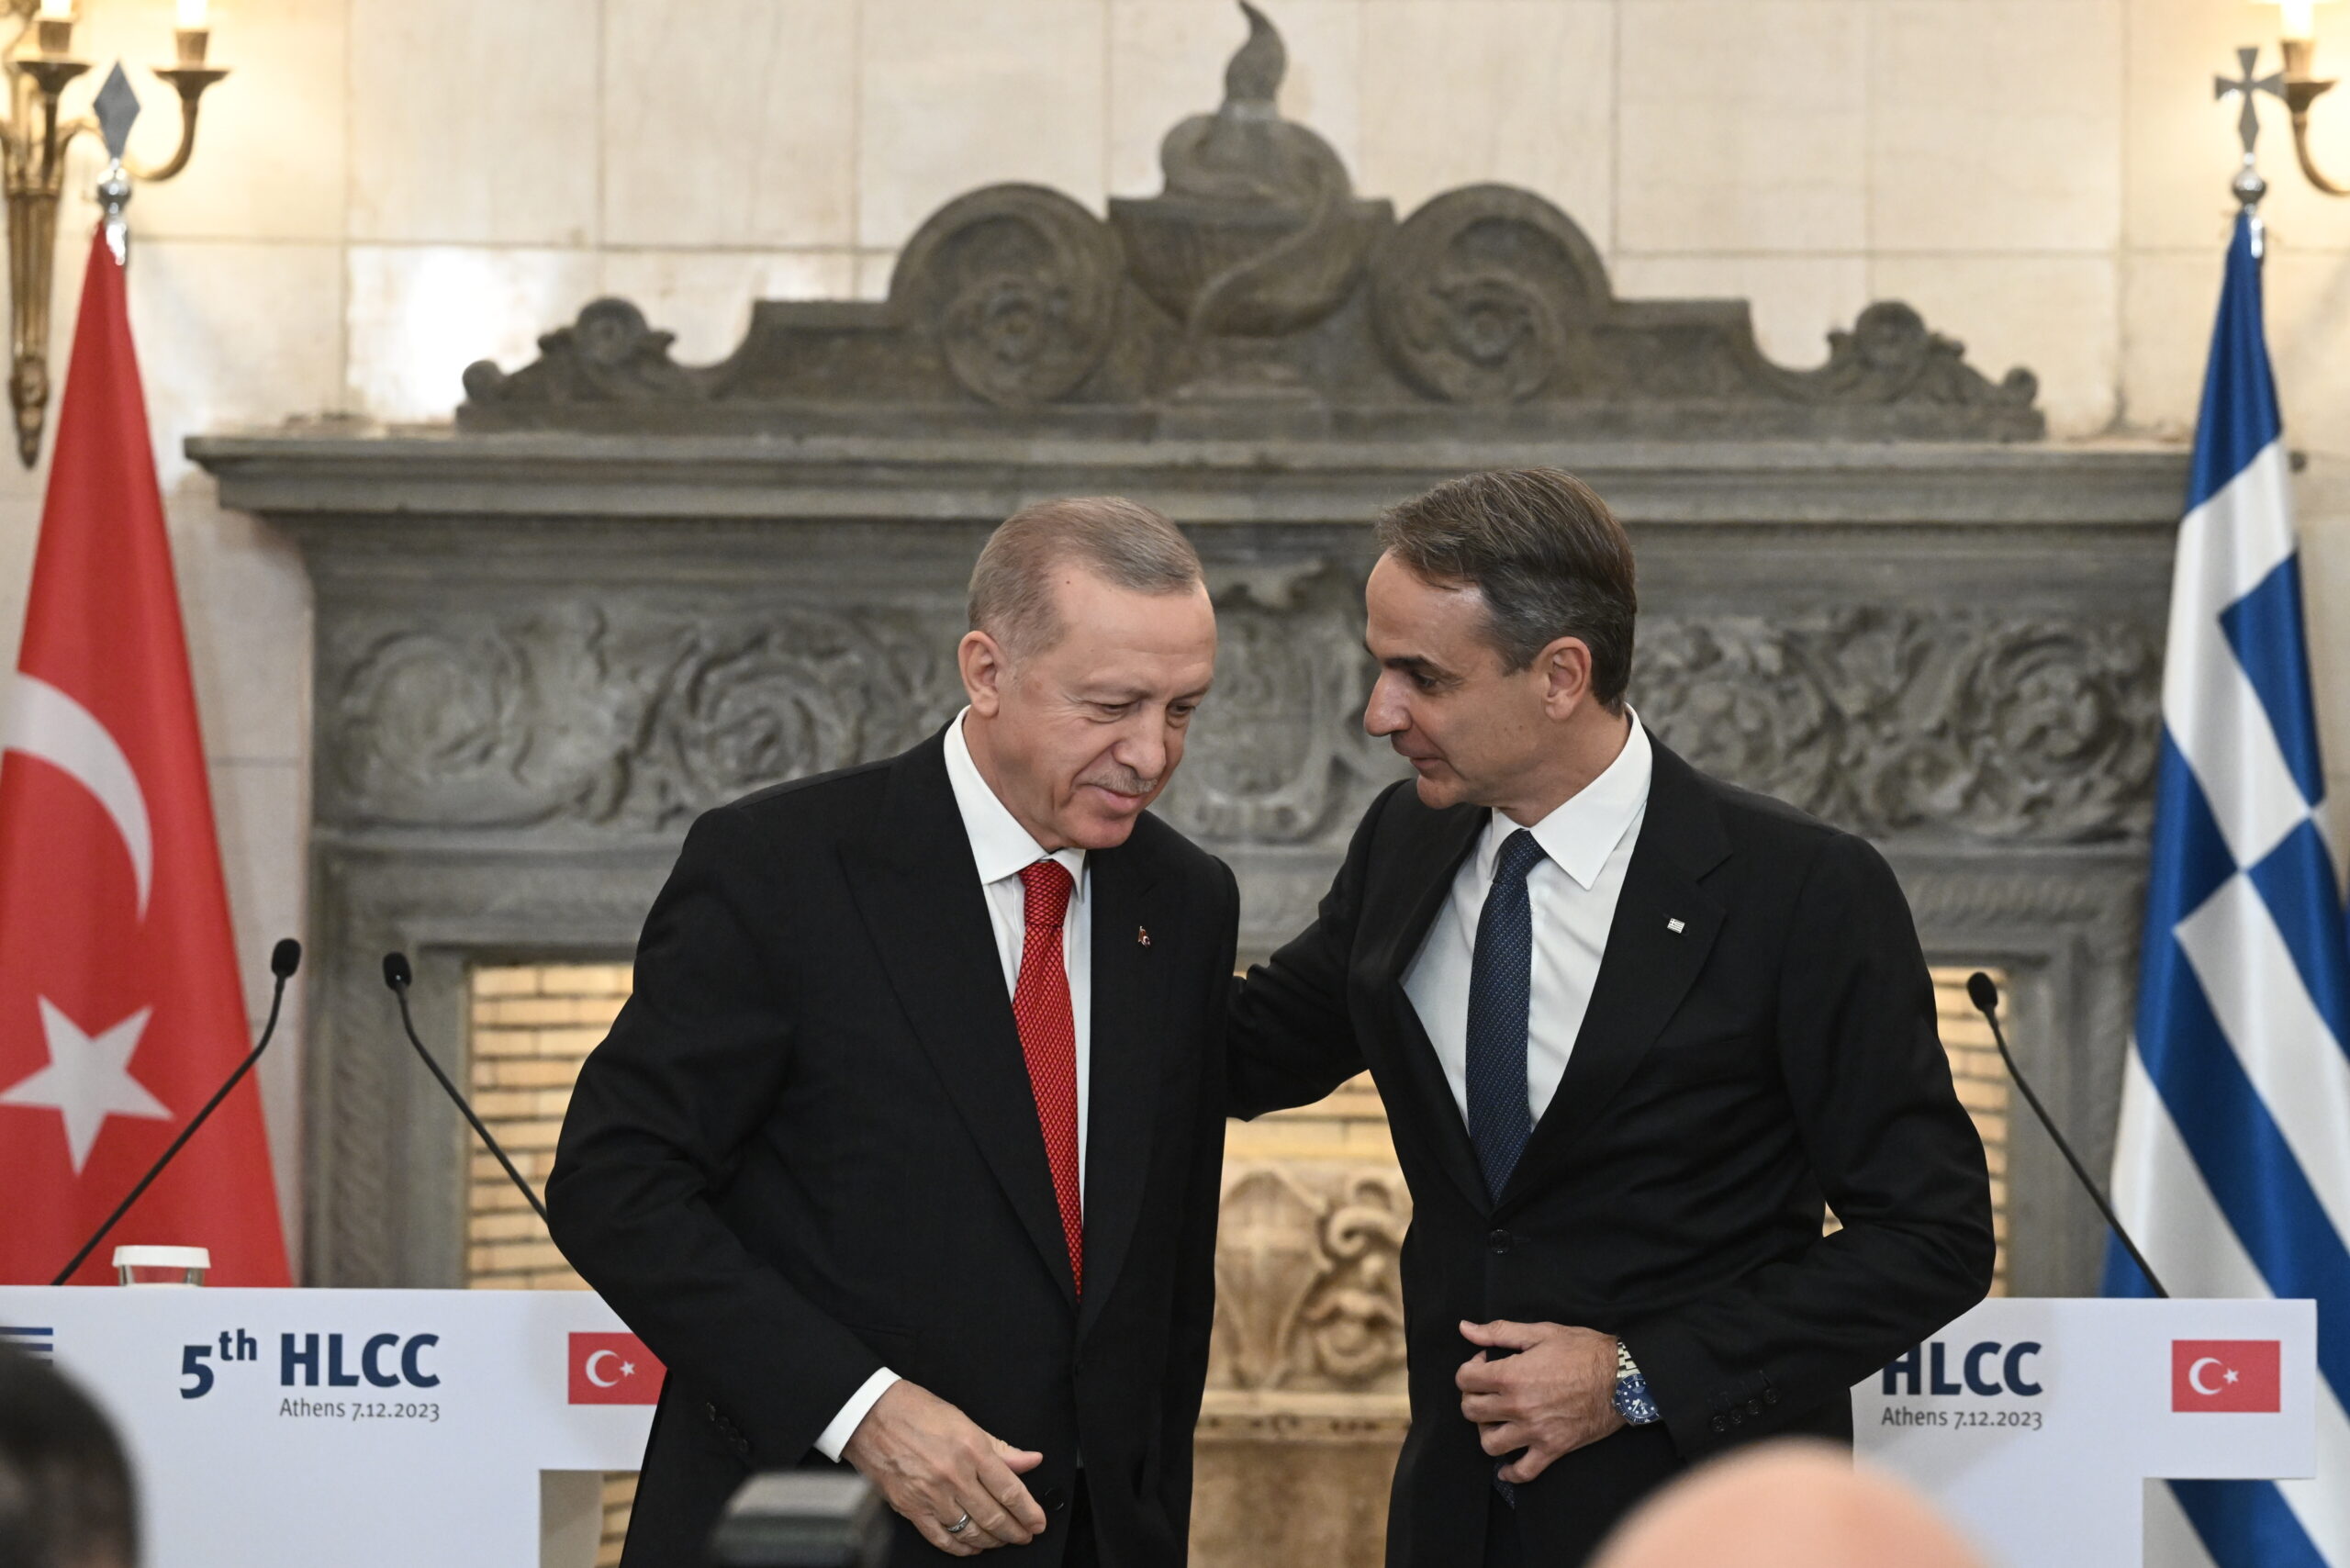 Ελλάδα – Τουρκία: Η κοινή διακήρυξη συνεργασίας και καλής γειτονίας με τις υπογραφές  Μητσοτάκη και Ερντογάν